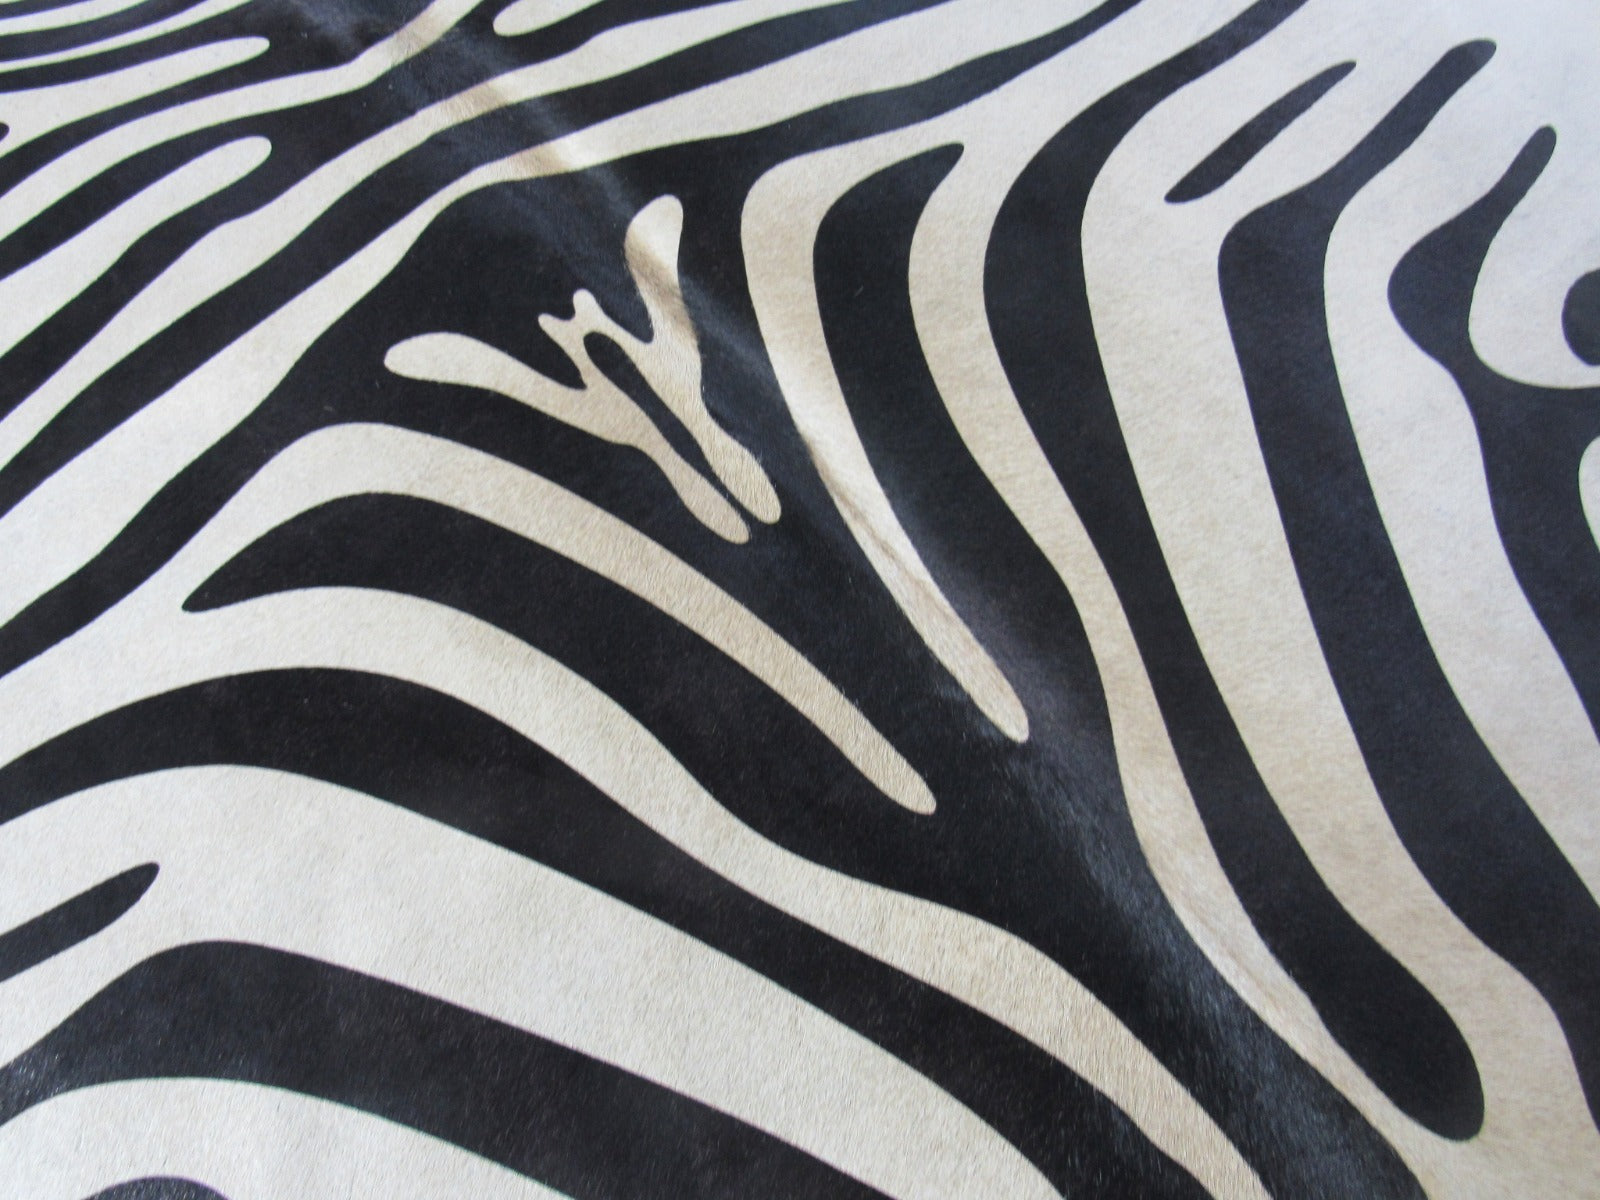 Nice Zebra Print Cowhide Rug (background is beige, darker dorsal line) Size: 6.5x6 feet M-1086